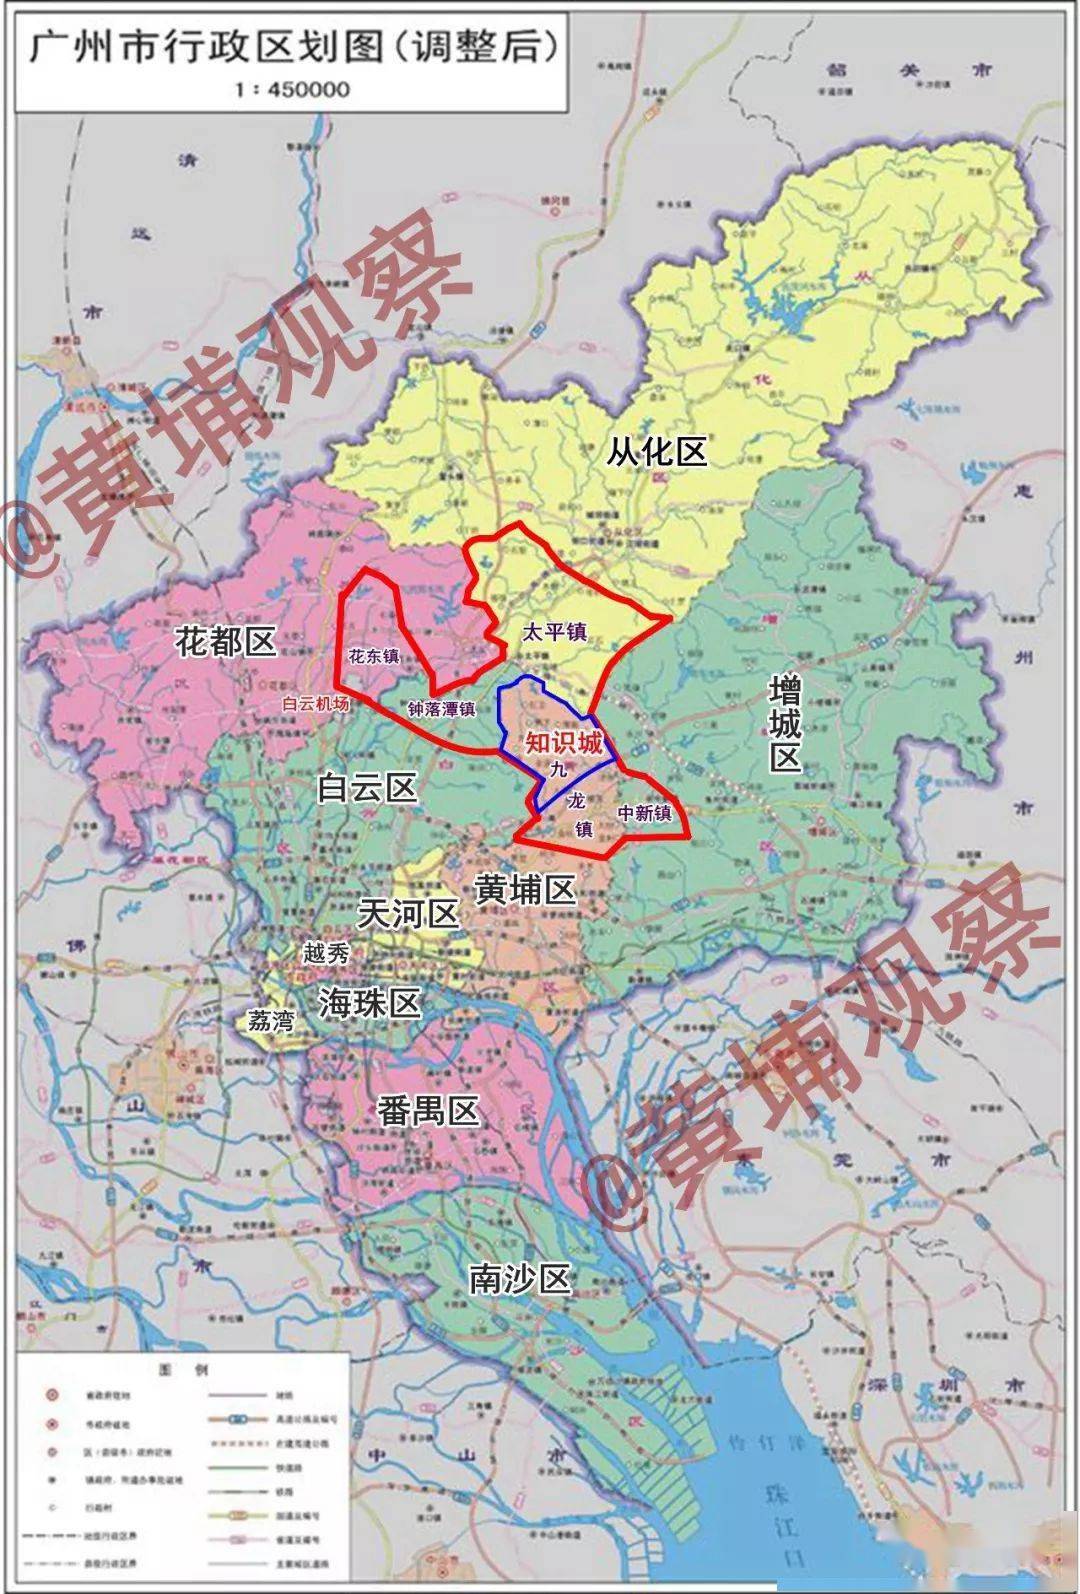 广州正筹建第12个行政区(知识城区)?